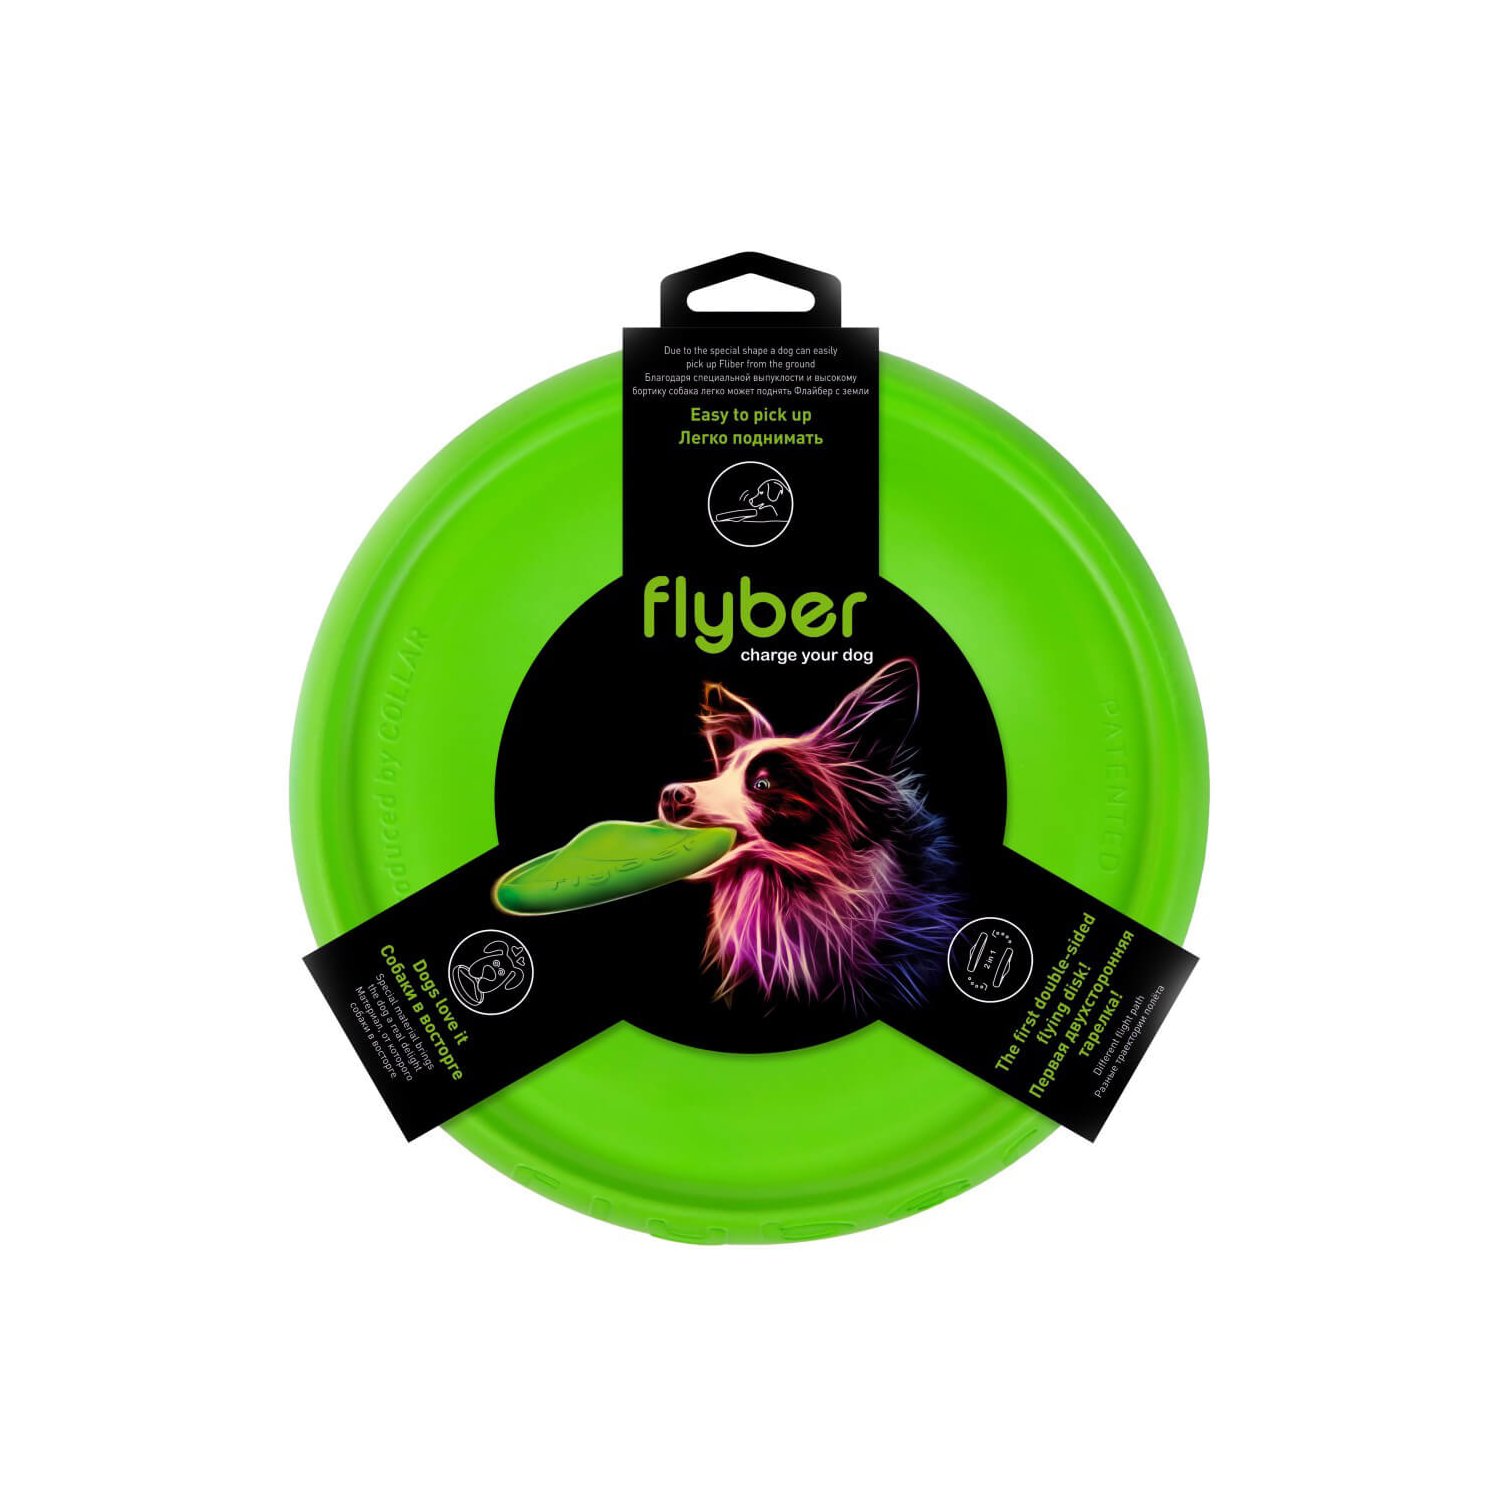 Flyber метательная игрушка для собак полимерный материал зеленый 22 см